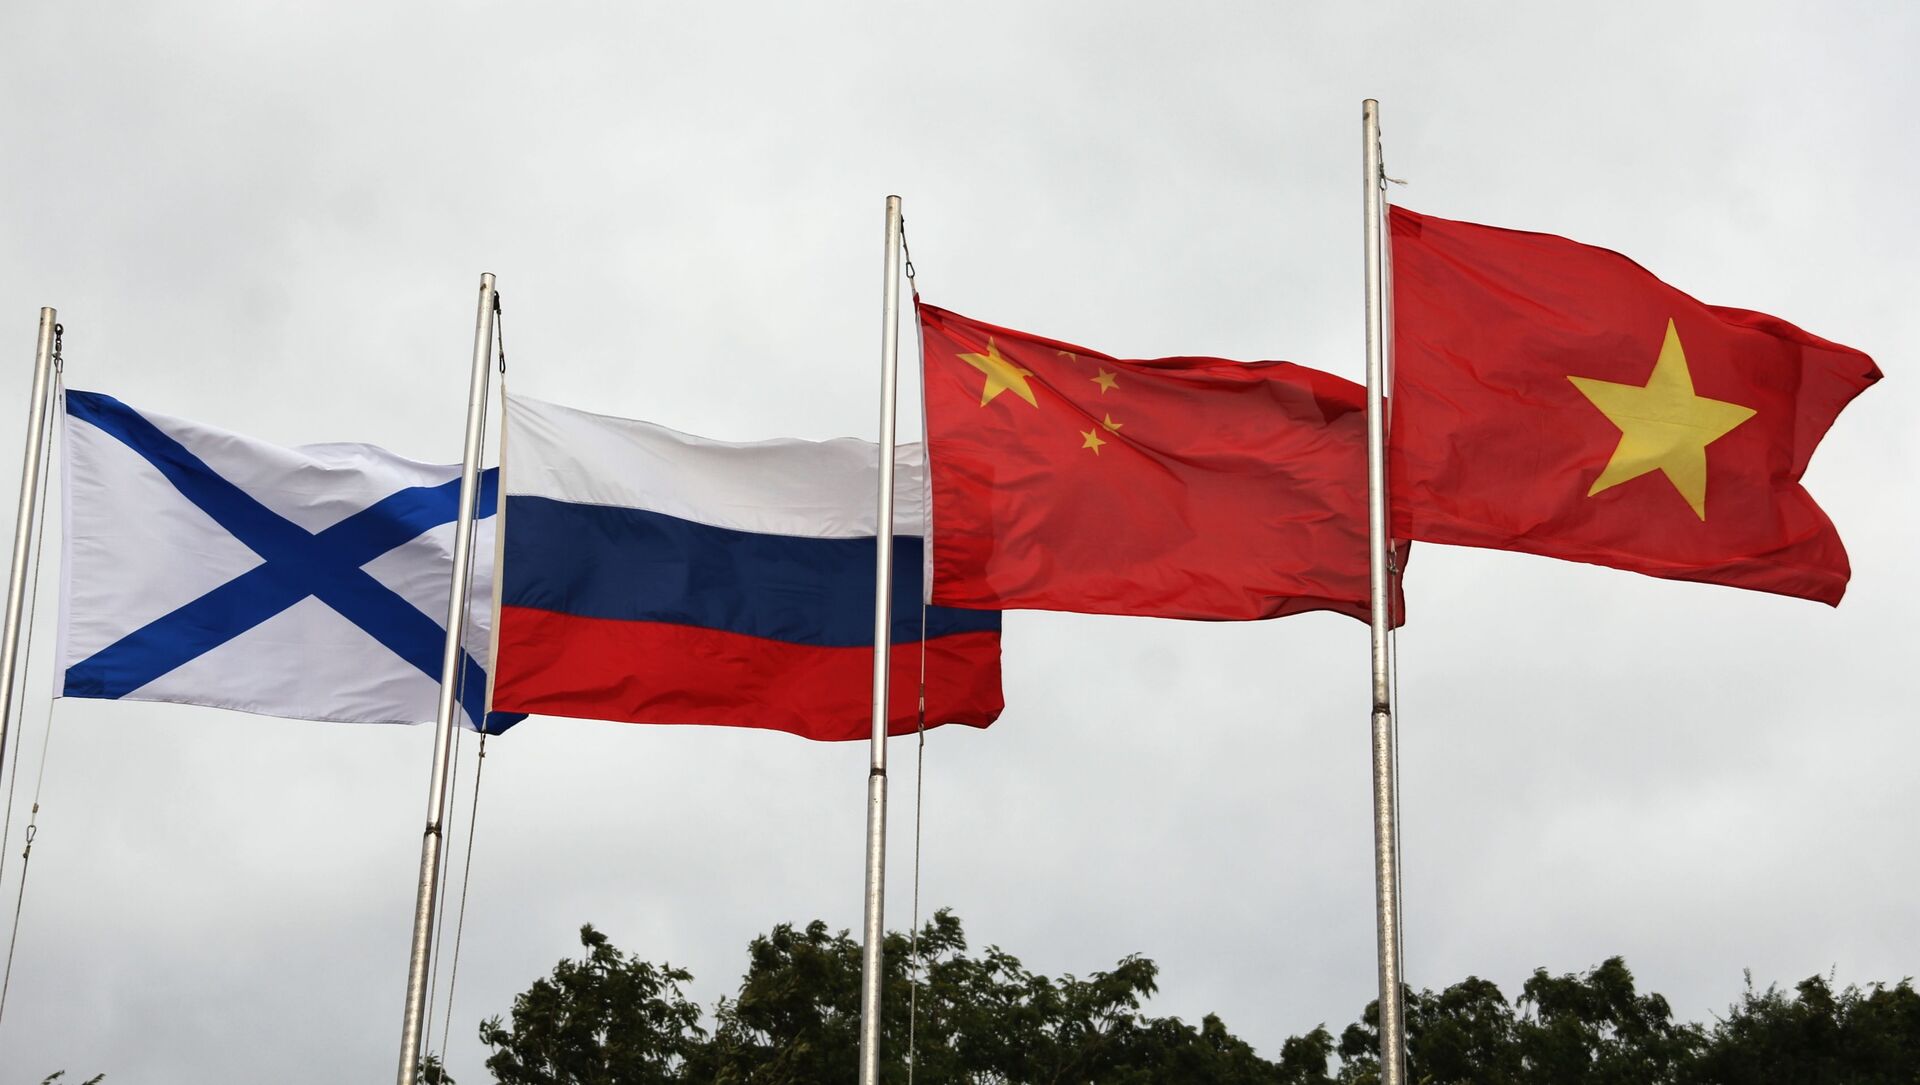 Lá cờ Andreevsky và các quốc kỳ Nga, Trung Quốc và Việt Nam (từ trái sang phải) trong lễ khai mạc Hội thao quân sự quốc tế Army Games 2021 tại Vladivostok - Sputnik Việt Nam, 1920, 26.08.2021